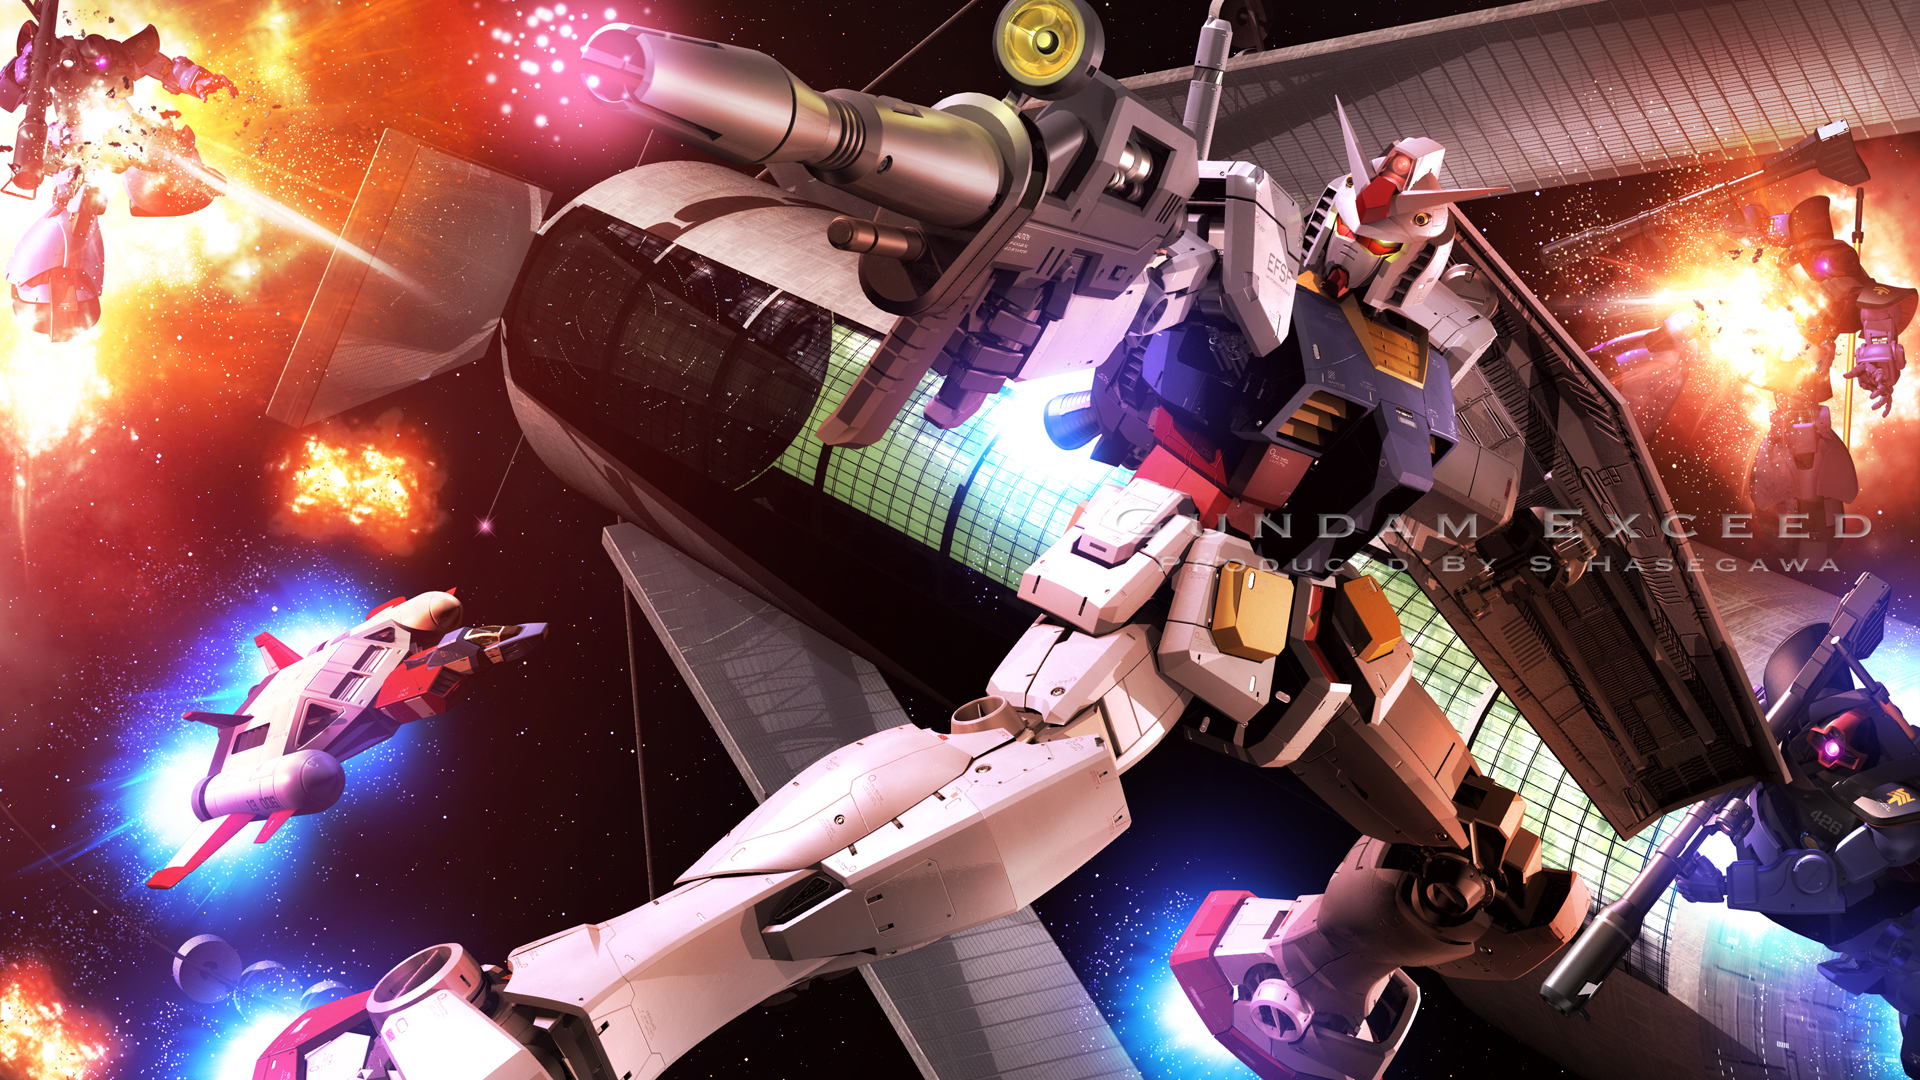 Anime Mech Gundam Super Robot Wars Mobile Suit Gundam RX 78 Gundam Artwork Digital Art Fan Art 1920x1080